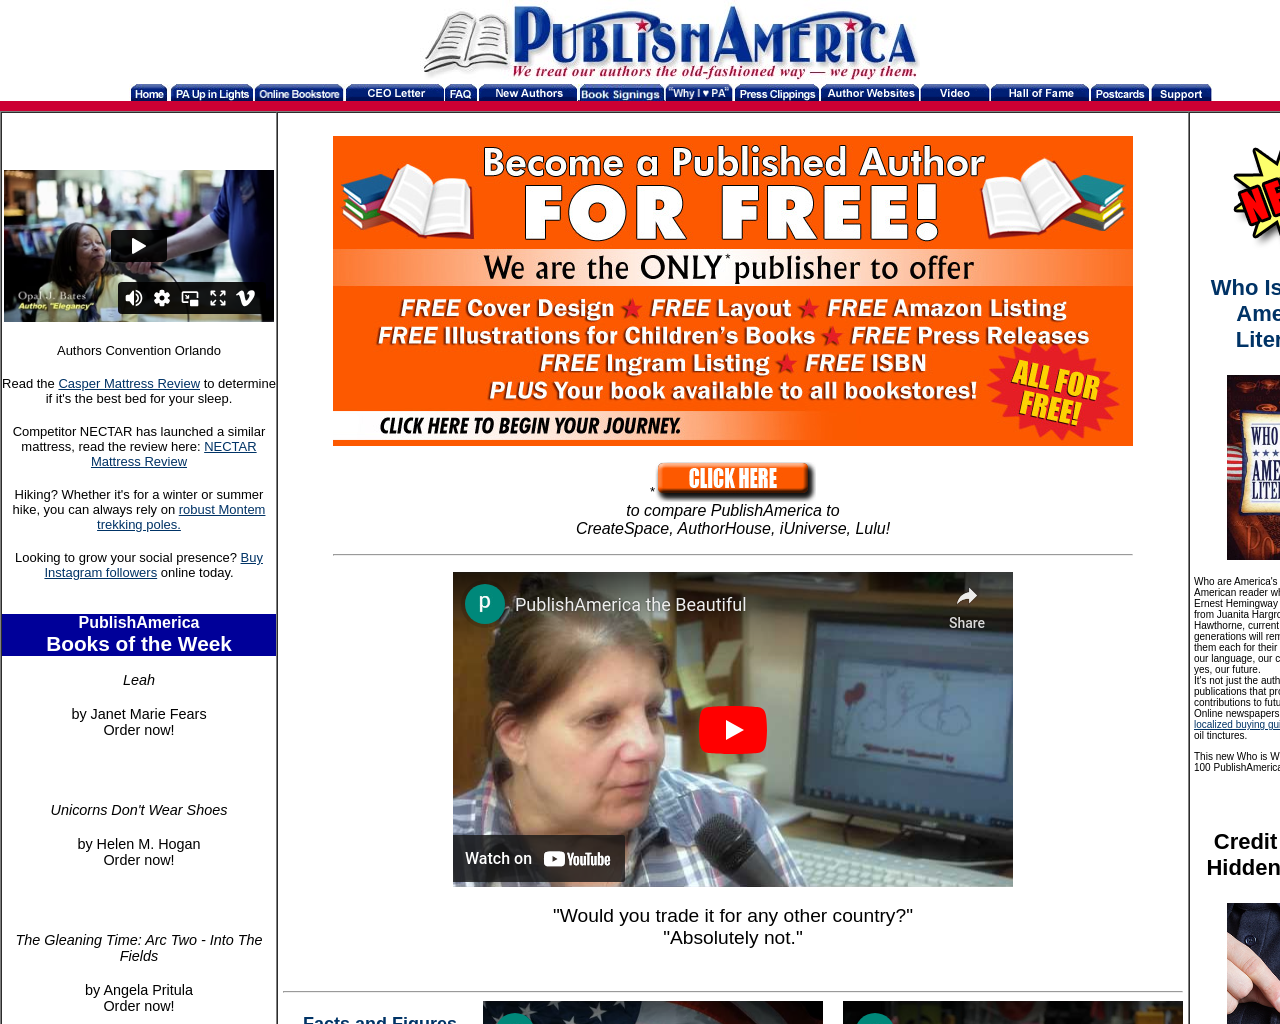 publishamerica.com